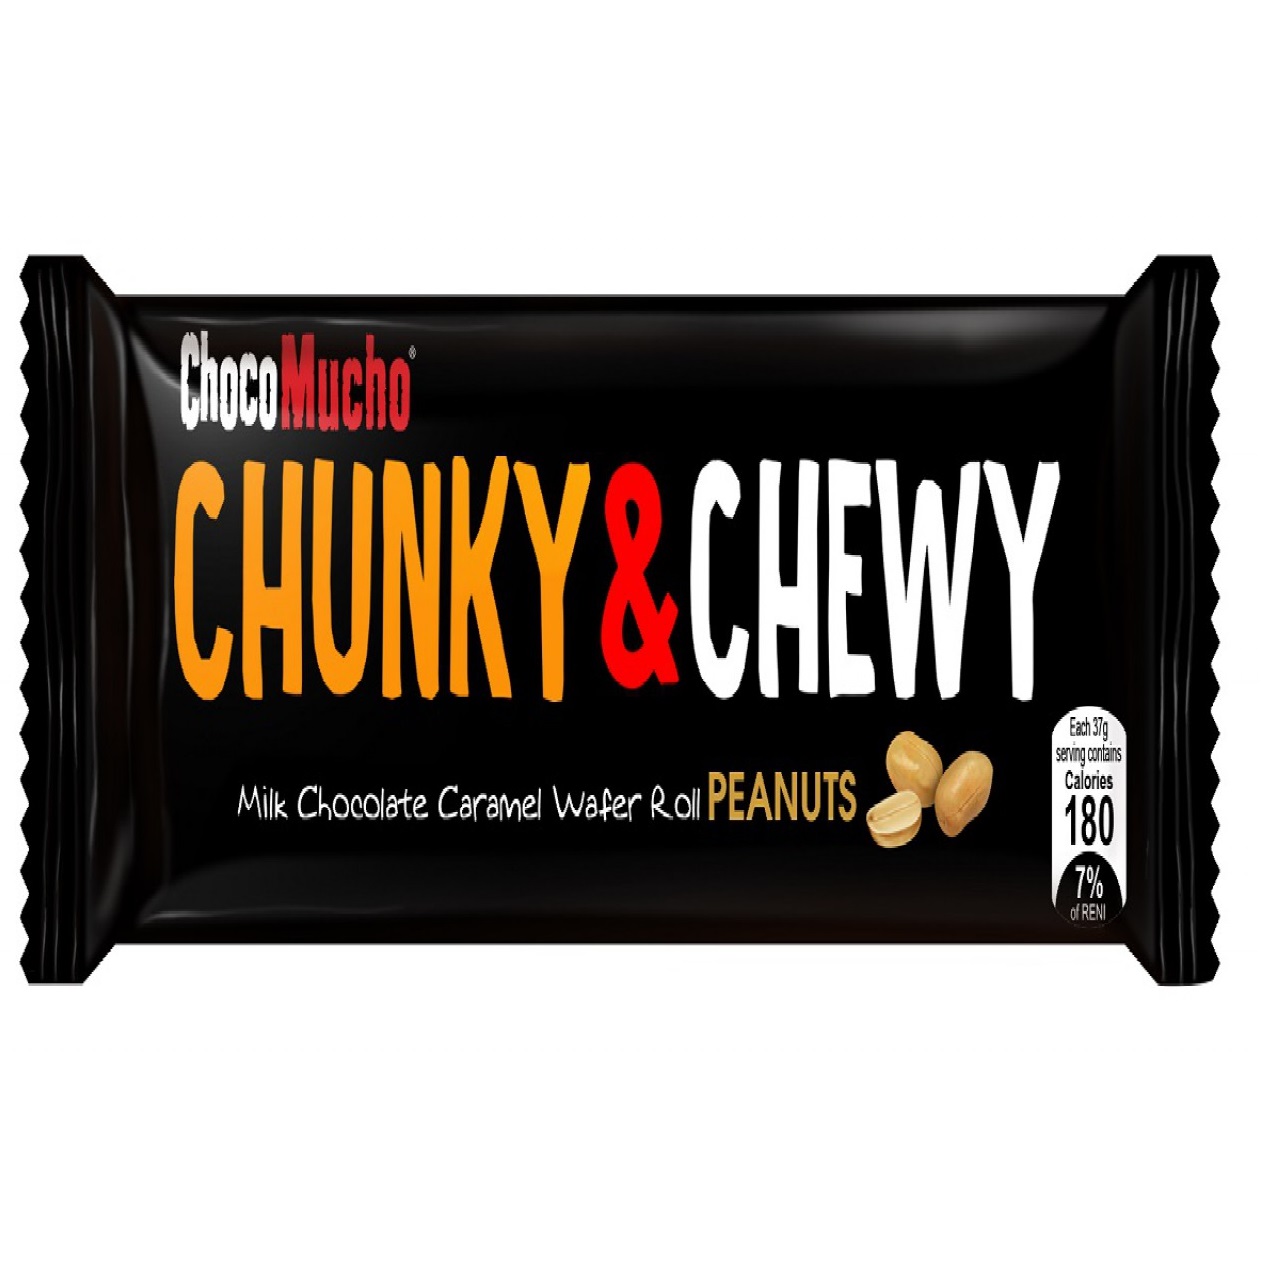 CHOCO MUCHO CHUNKY & CHEWY WAFER ROLL PEANUTS MILK CHOCOLATE CARAMEL 37G